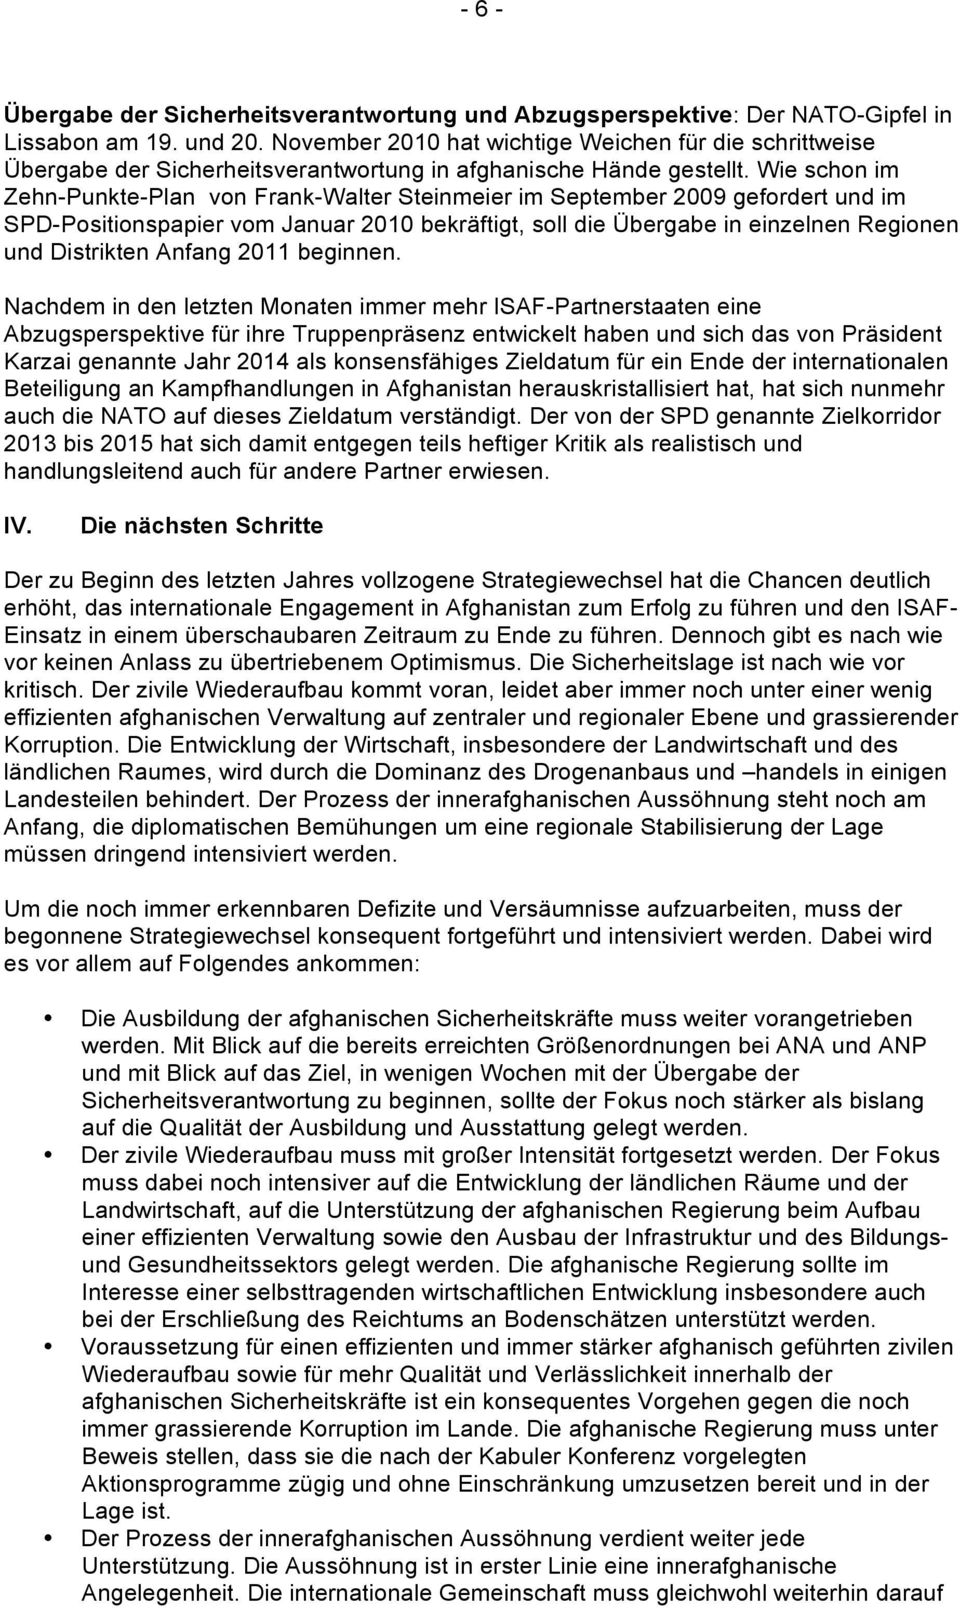 Wie schon im Zehn-Punkte-Plan von Frank-Walter Steinmeier im September 2009 gefordert und im SPD-Positionspapier vom Januar 2010 bekräftigt, soll die Übergabe in einzelnen Regionen und Distrikten